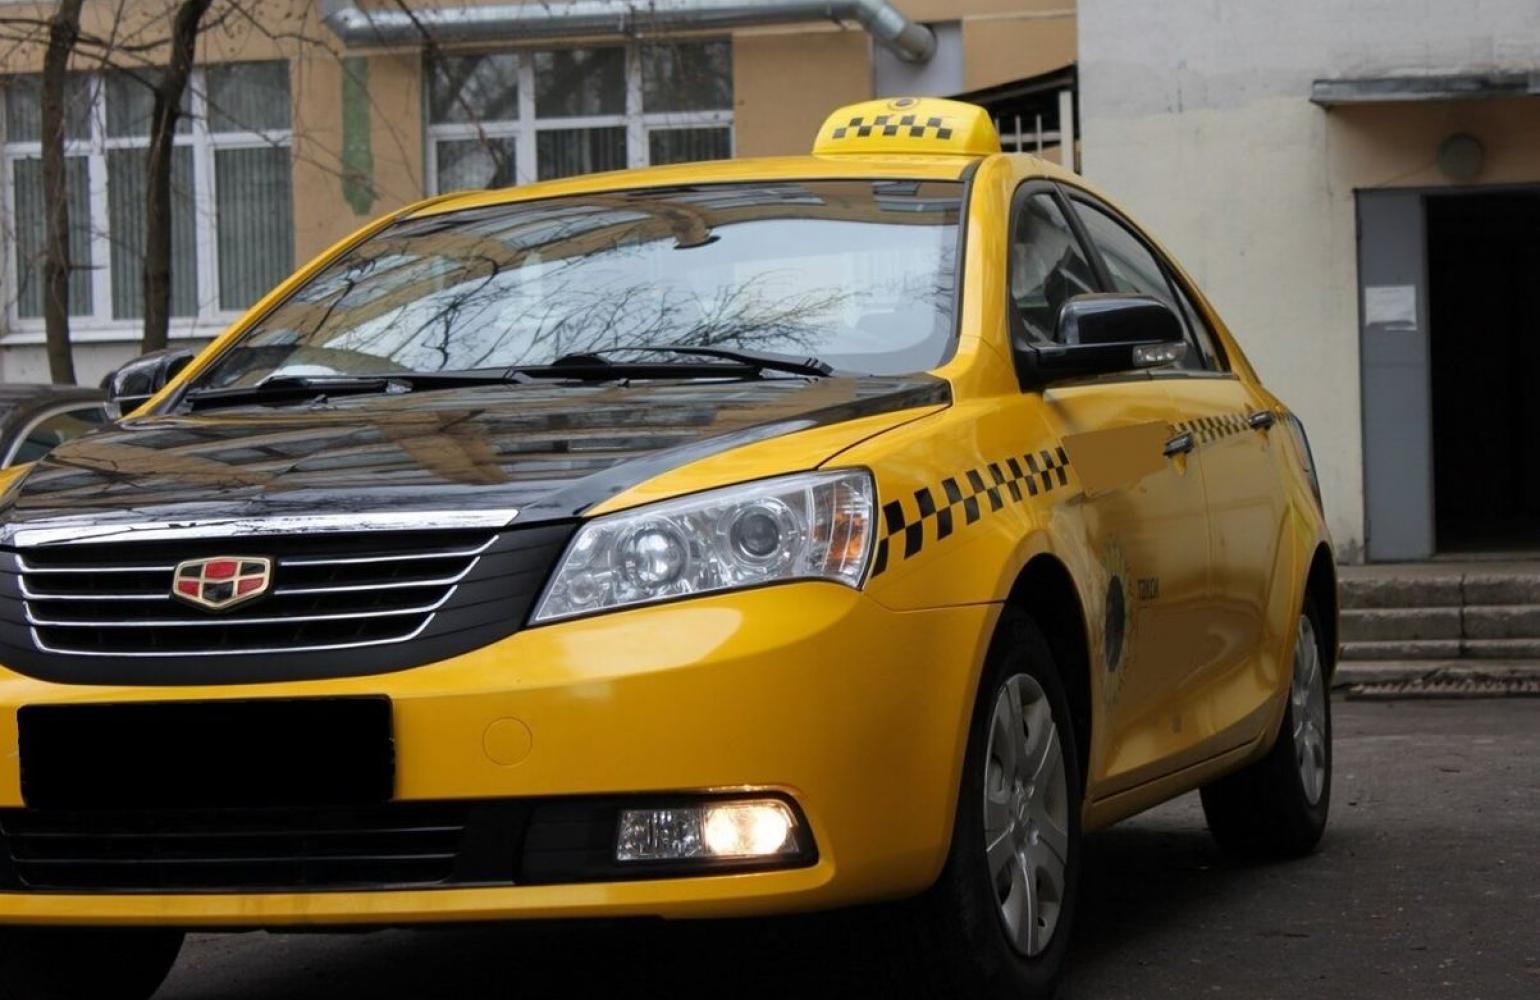 Заказать такси бесплатный номер. Машина "такси". Автомобиль «такси». Такса в машине. Легковой автомобиль такси.